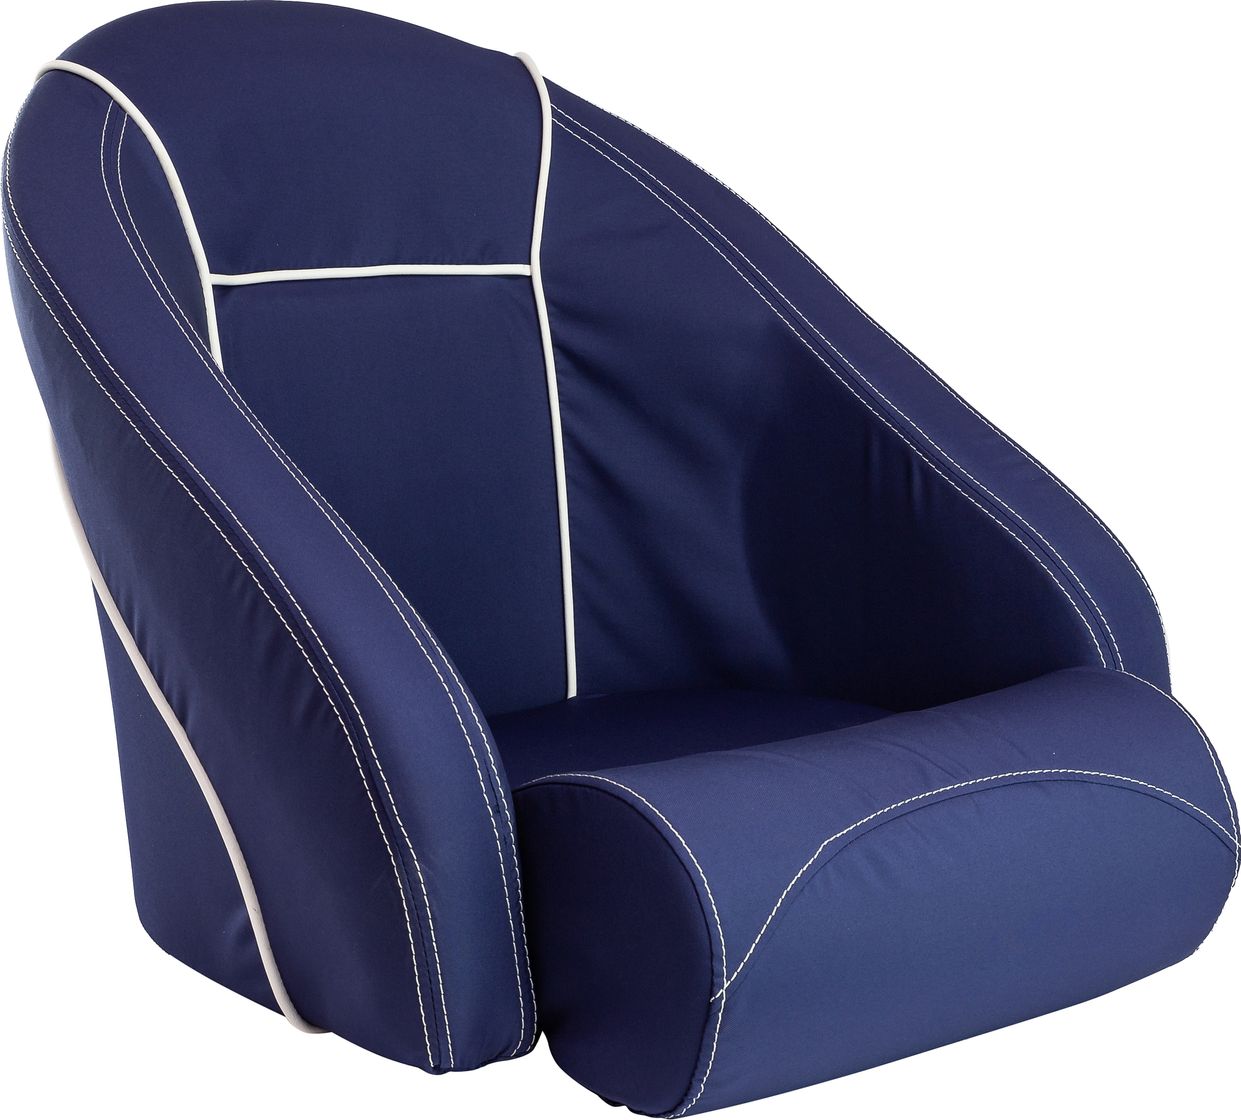 Кресло ROMEO мягкое, подставка, обивка ткань Markilux темно-синяя 118100395 кресло с виниловыми подушками серое с темно серым more 10253848